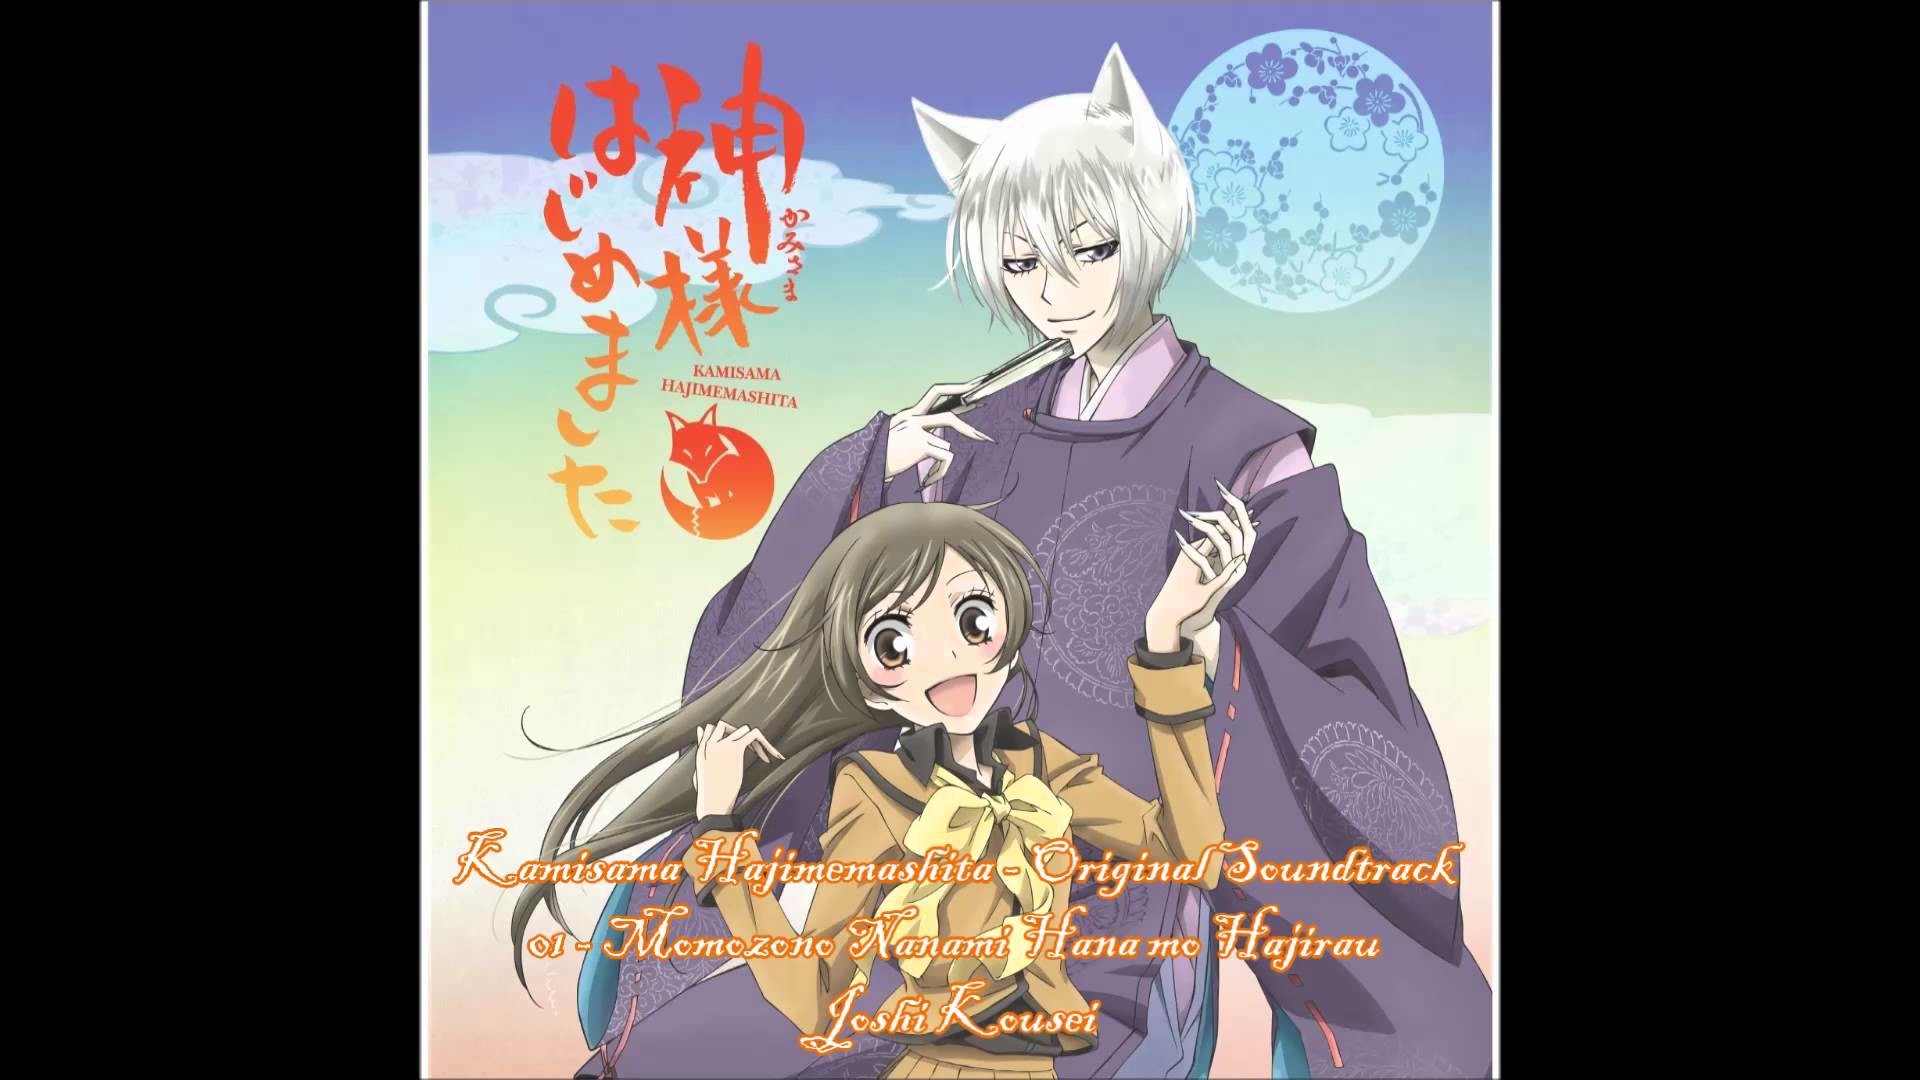 1920x1080 Kamisama Hajimemashita - Original Soundtrack - 01. Momozono Nanami Hana mo  Hajirau Joshi Kousei - YouTube